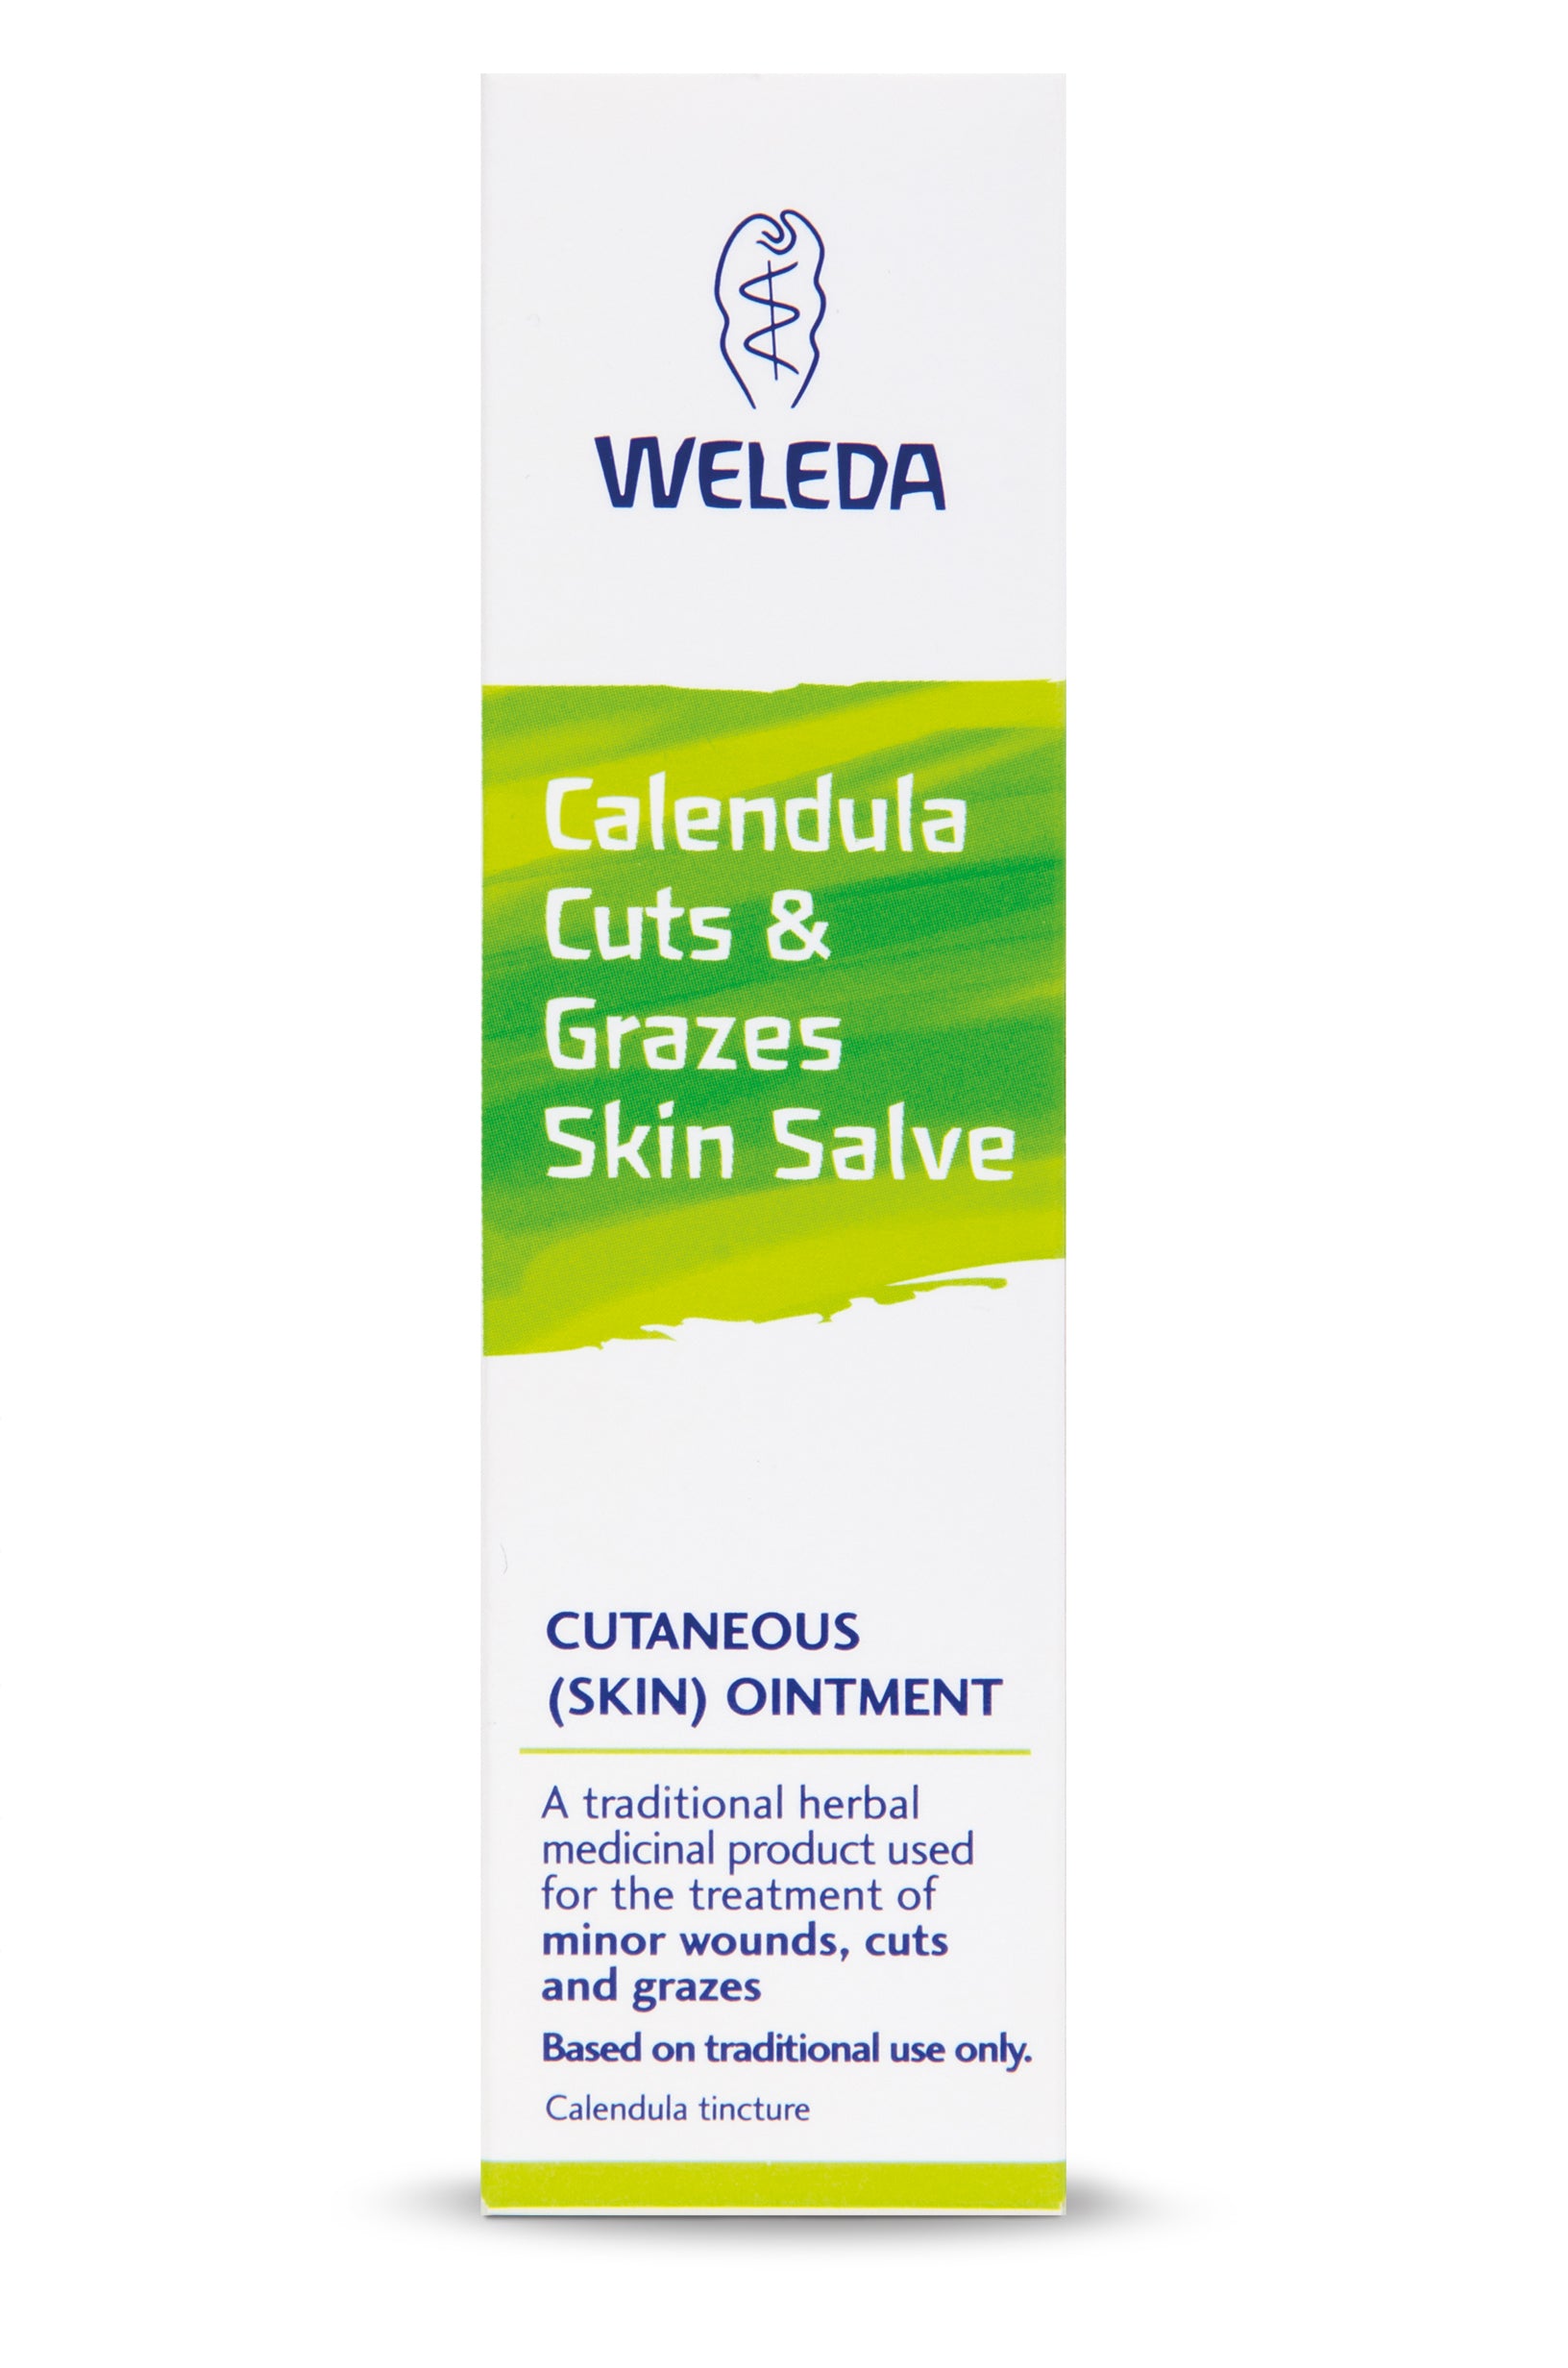 Calendula Cuts & Grazes Skin Salve - 25g - Box